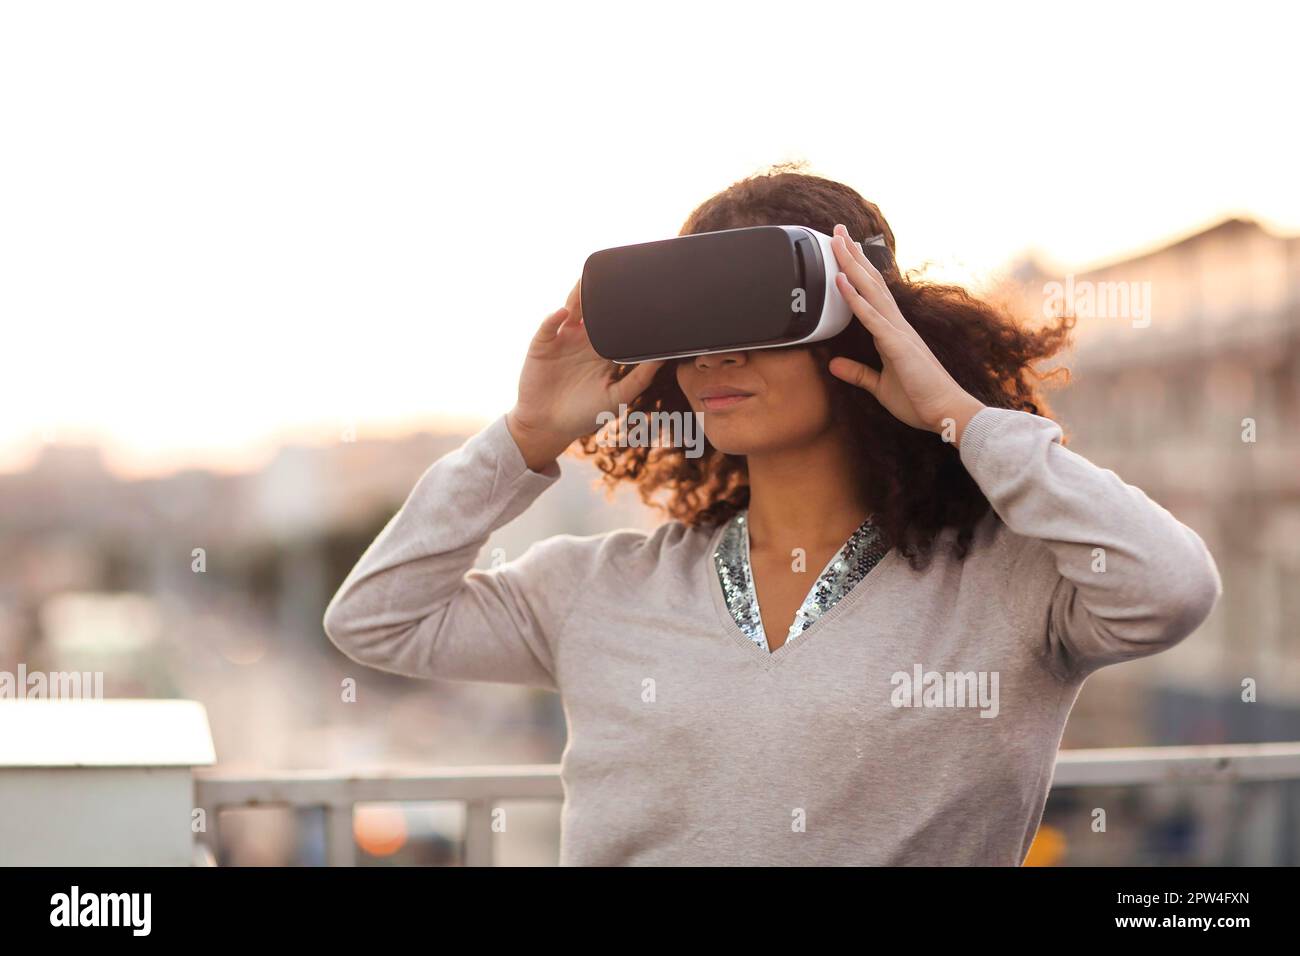 Technologie future.Jeune femme moderne de course mixte dans VR lunettes casque explorant la réalité virtuelle en plein air avec paysage urbain en arrière-plan, femme essayant Banque D'Images